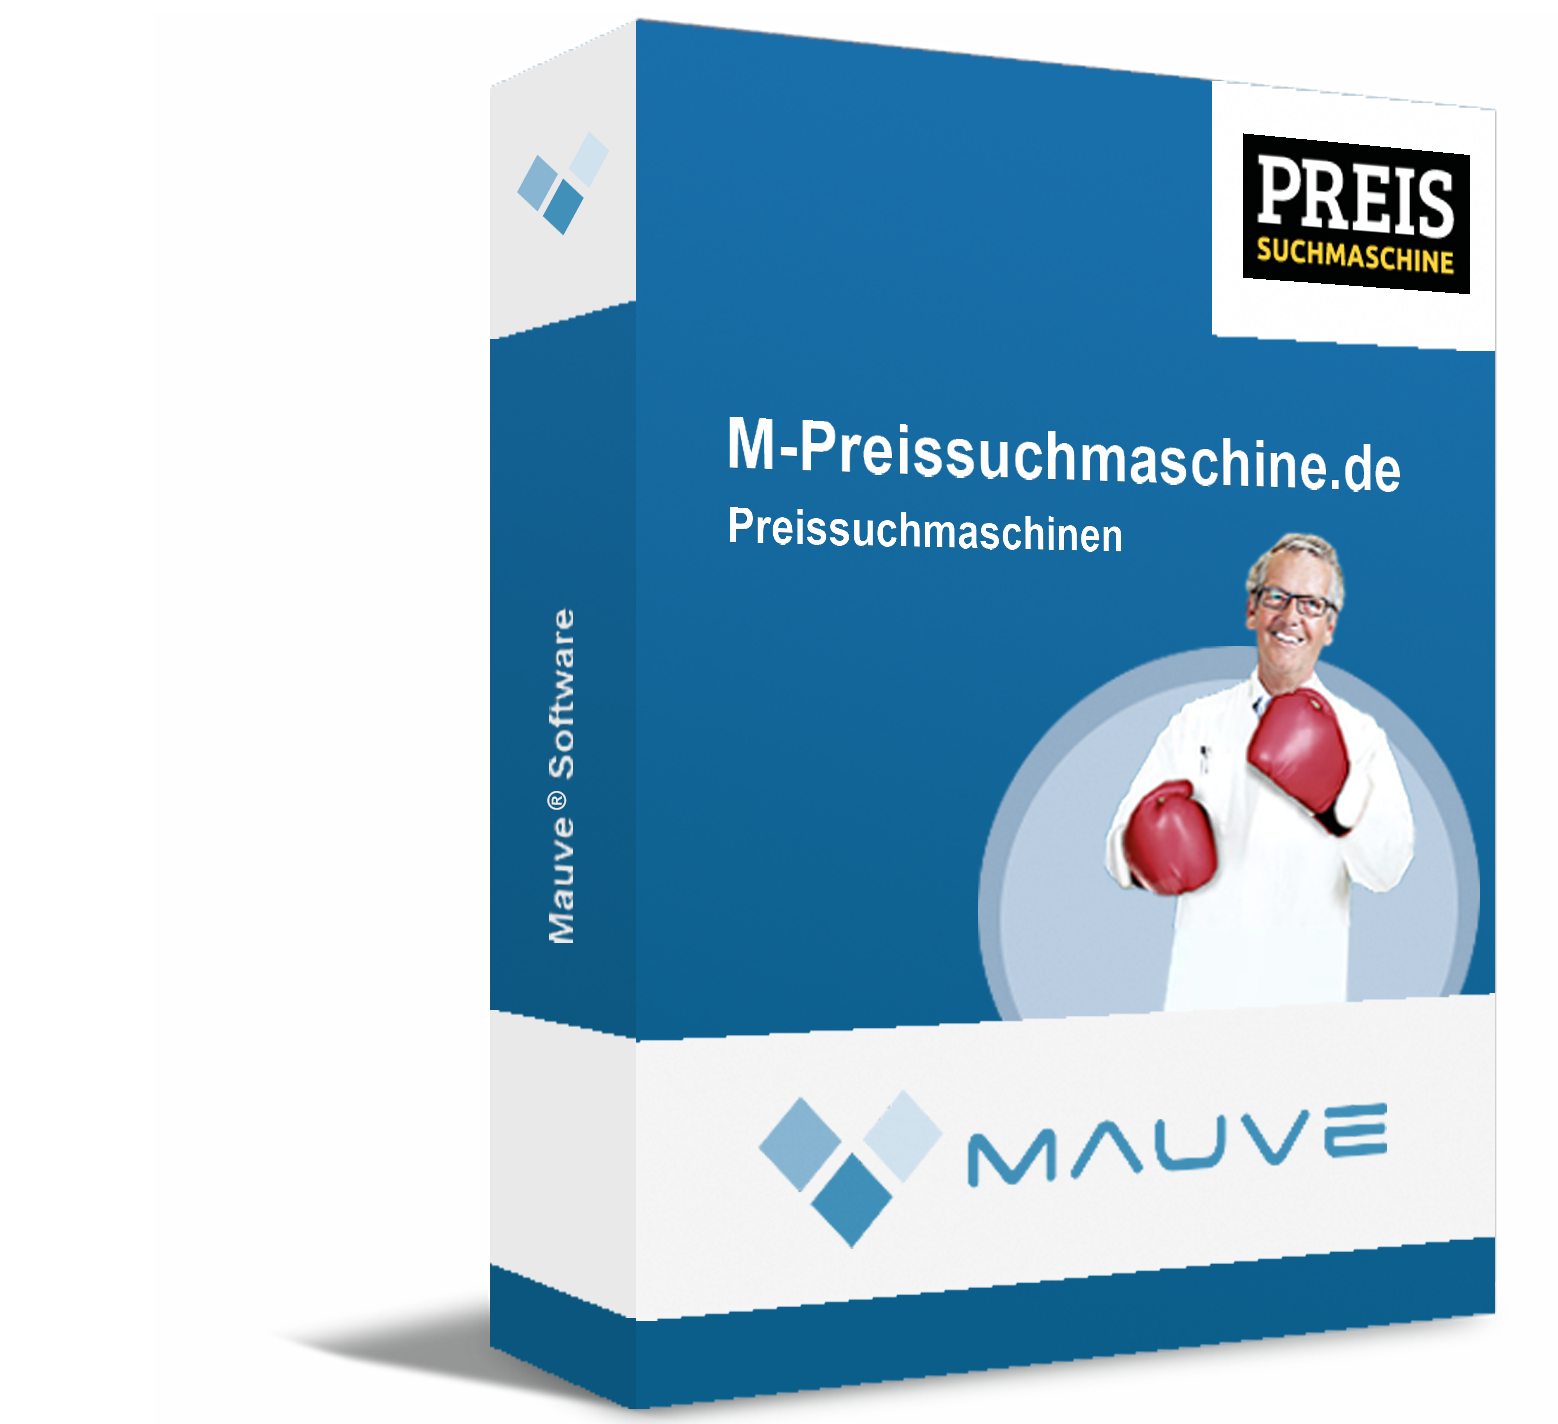 M-Preissuchmaschine.de